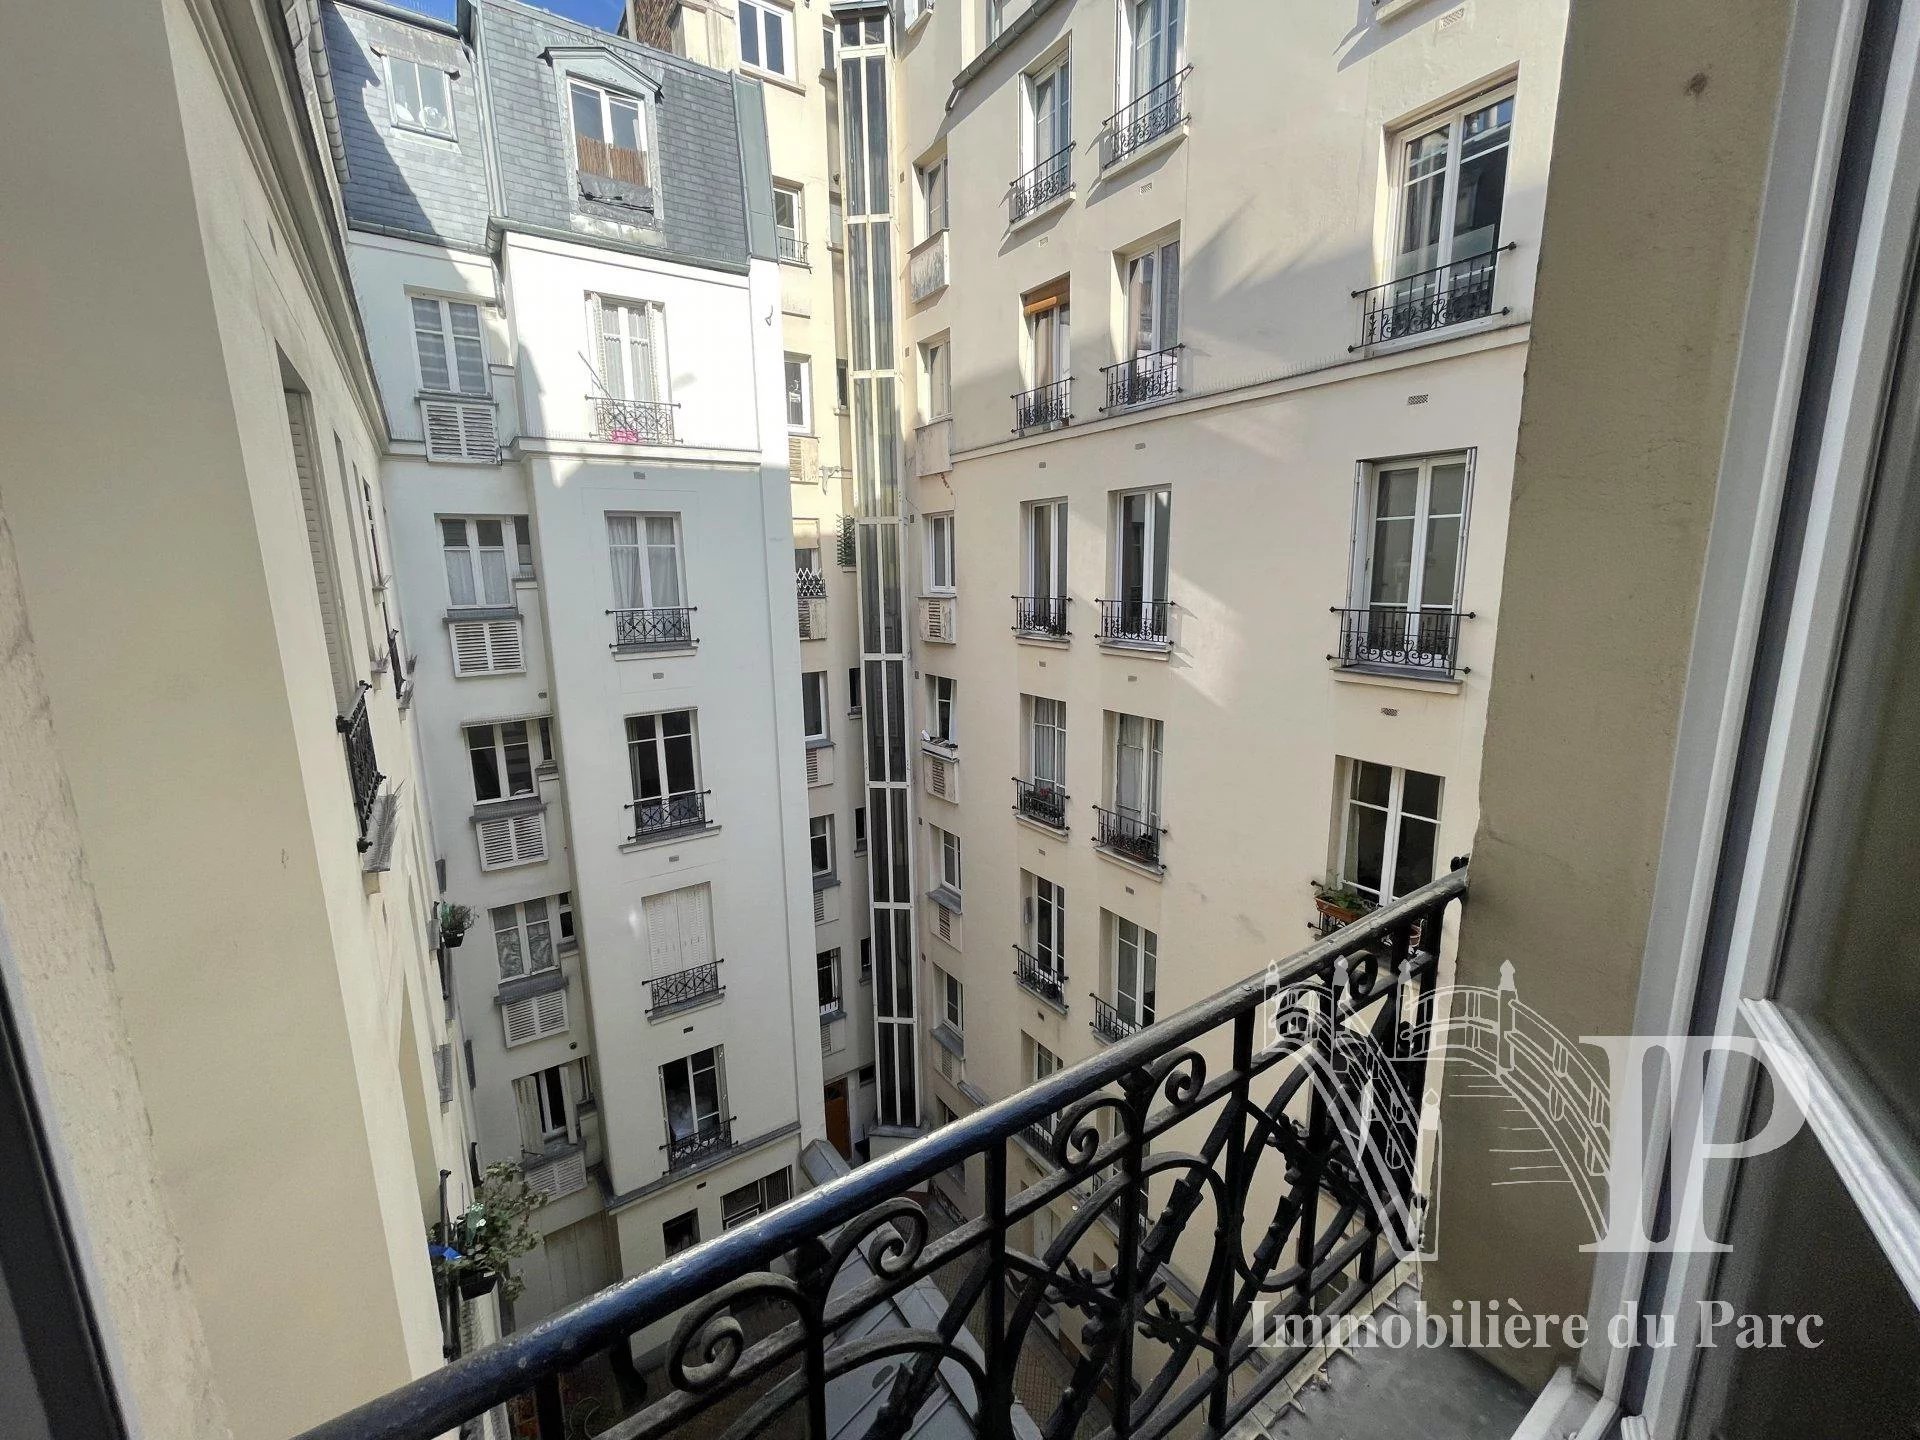 Vente Appartement - Paris 15ème Grenelle